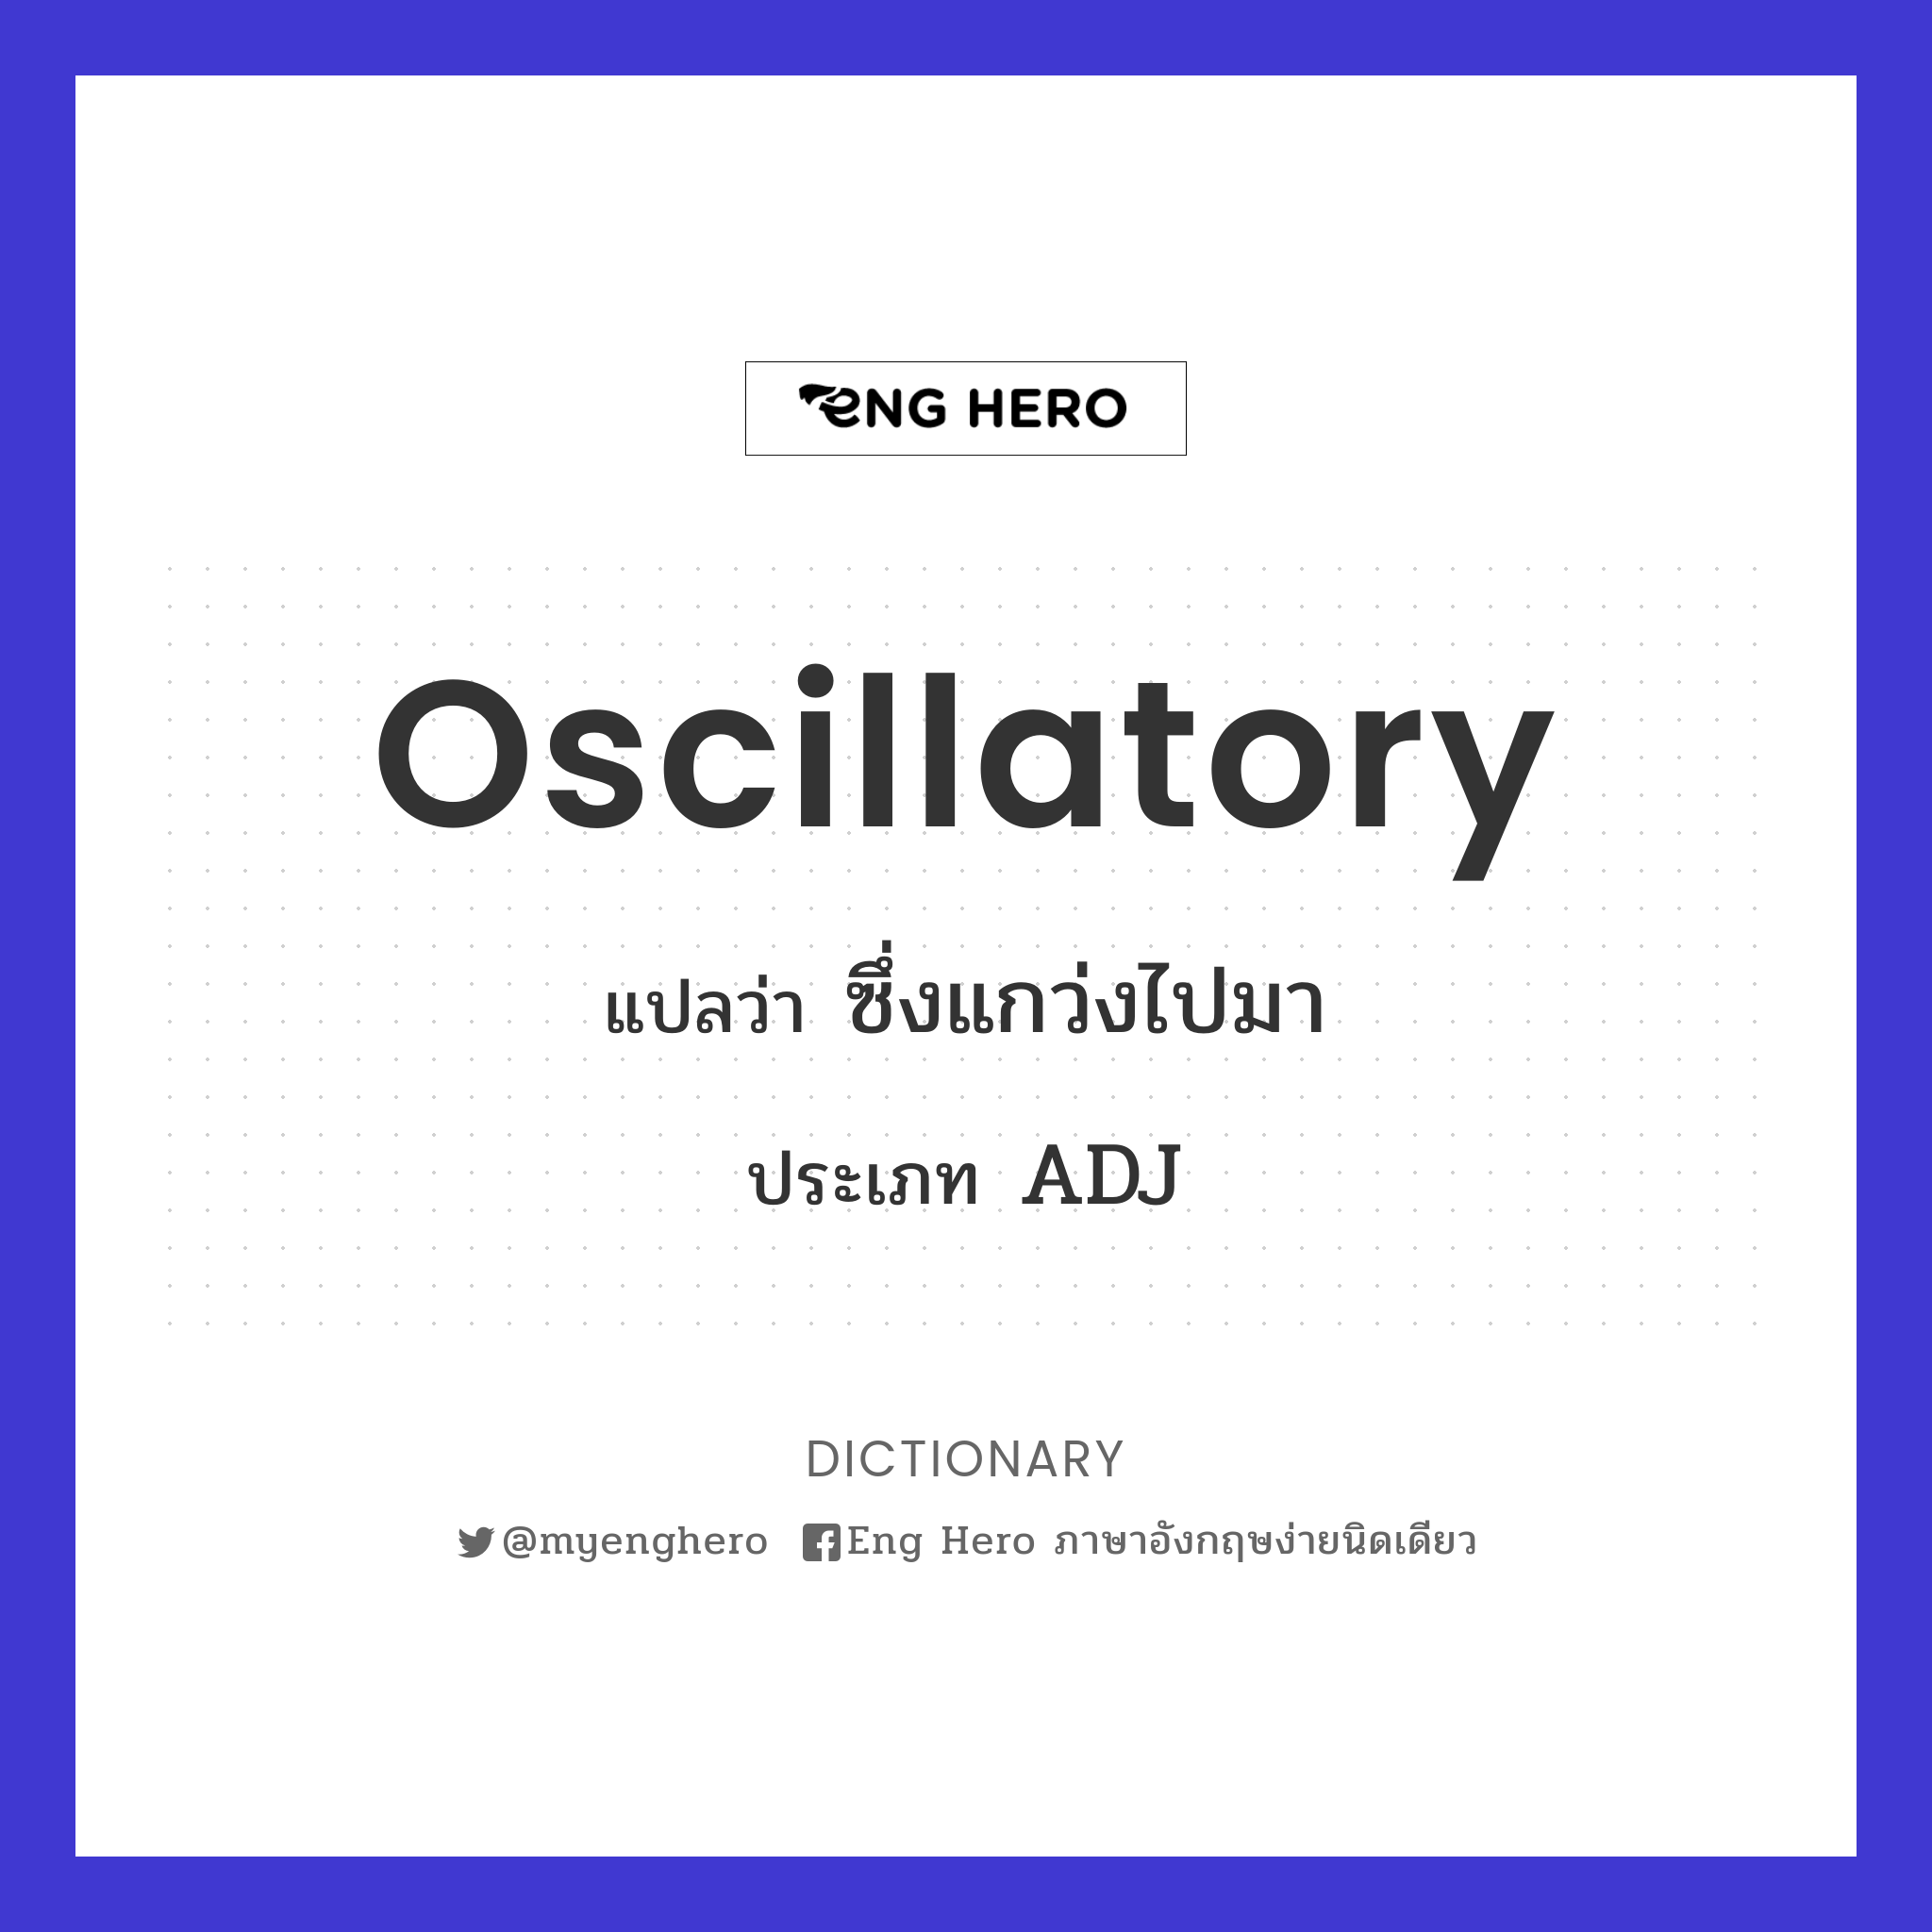 oscillatory